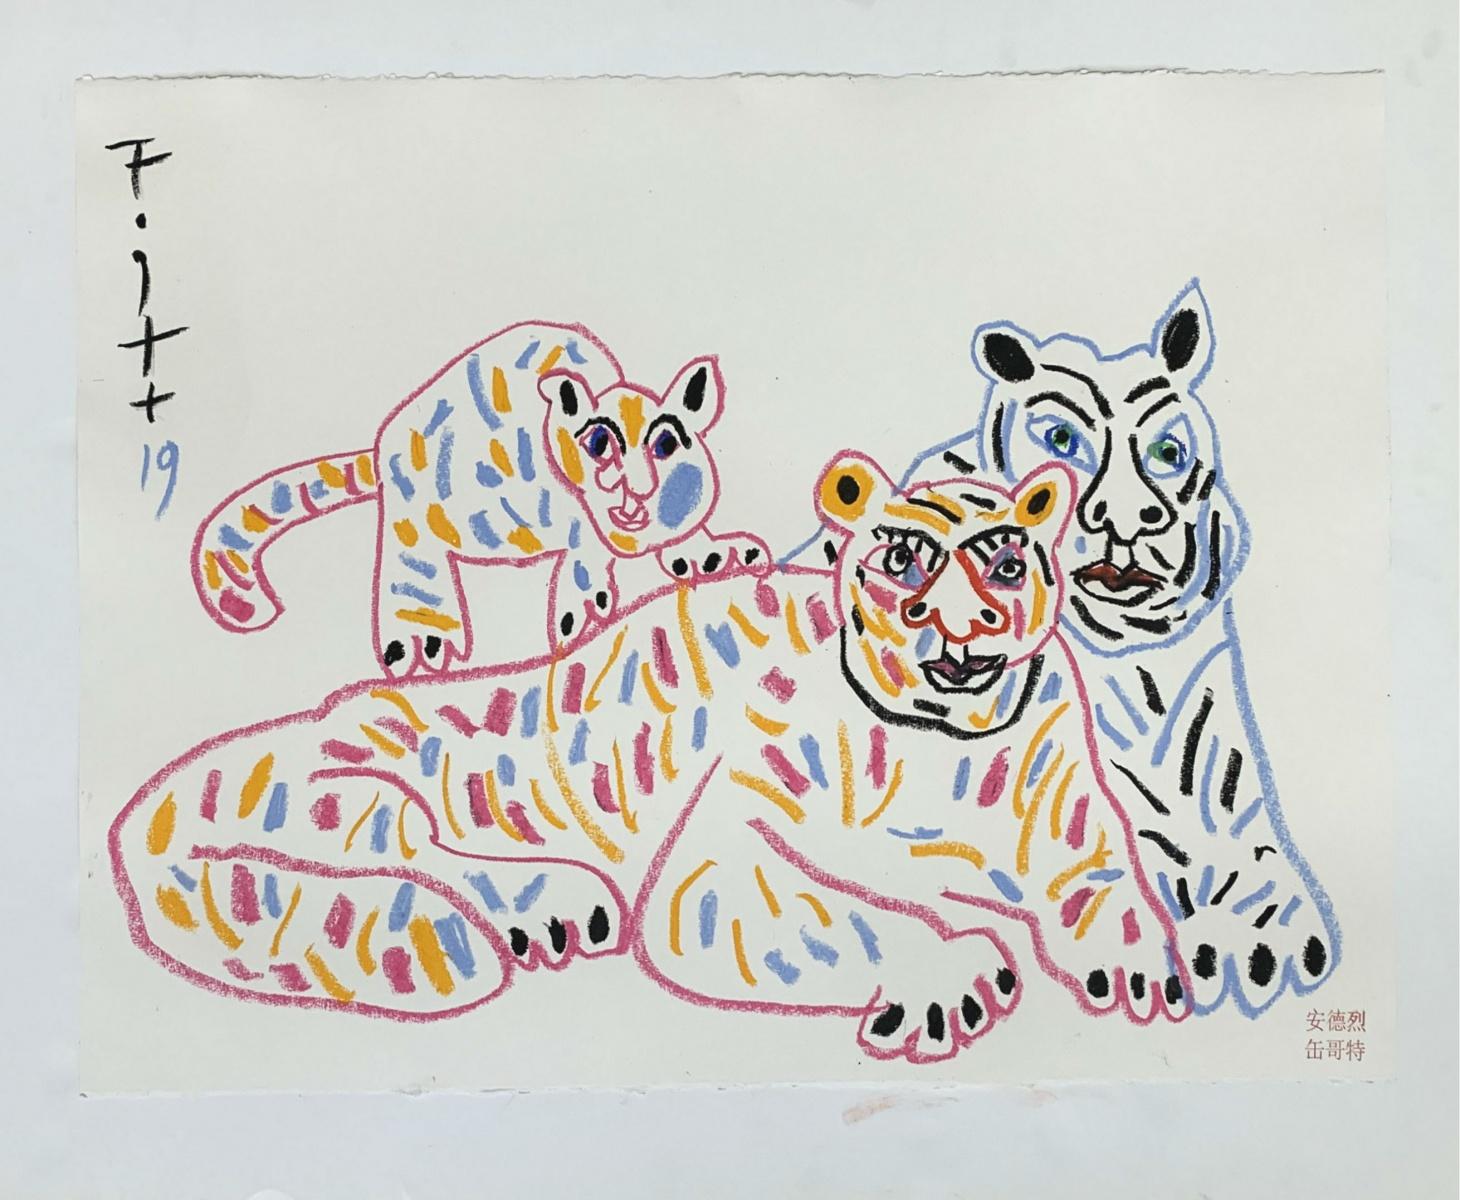 Tigres avec fils - Maître d'art polonais, pastels, animaux, signe du zodiaque chinois - Painting de Andrzej Fogtt